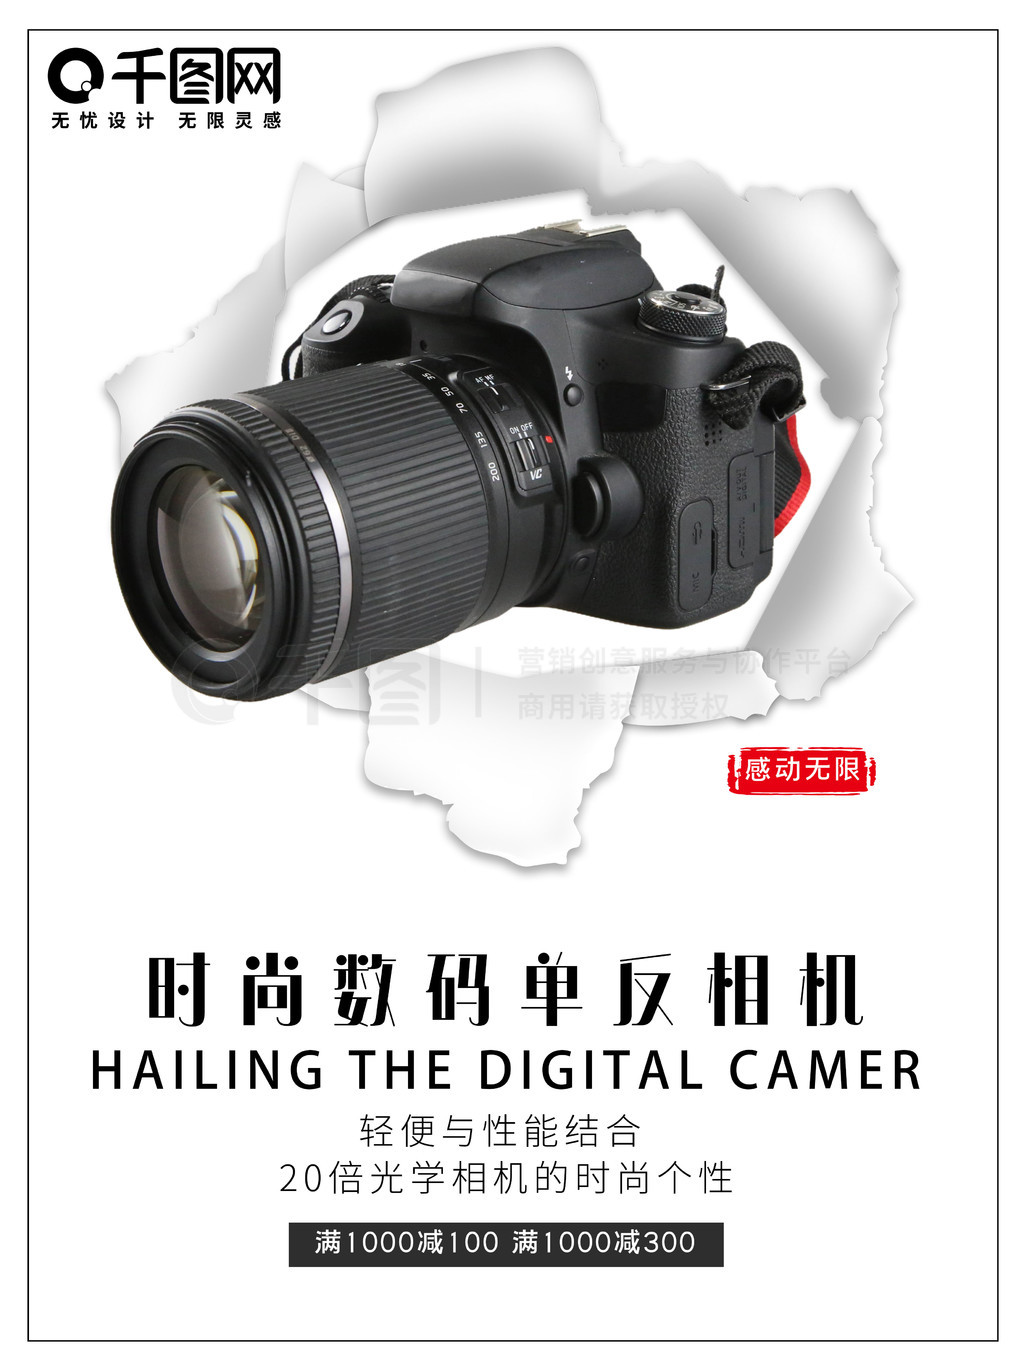 数码相机电子产品促销海报矢量图免费下载_psd格式_3543像素_编号37168188